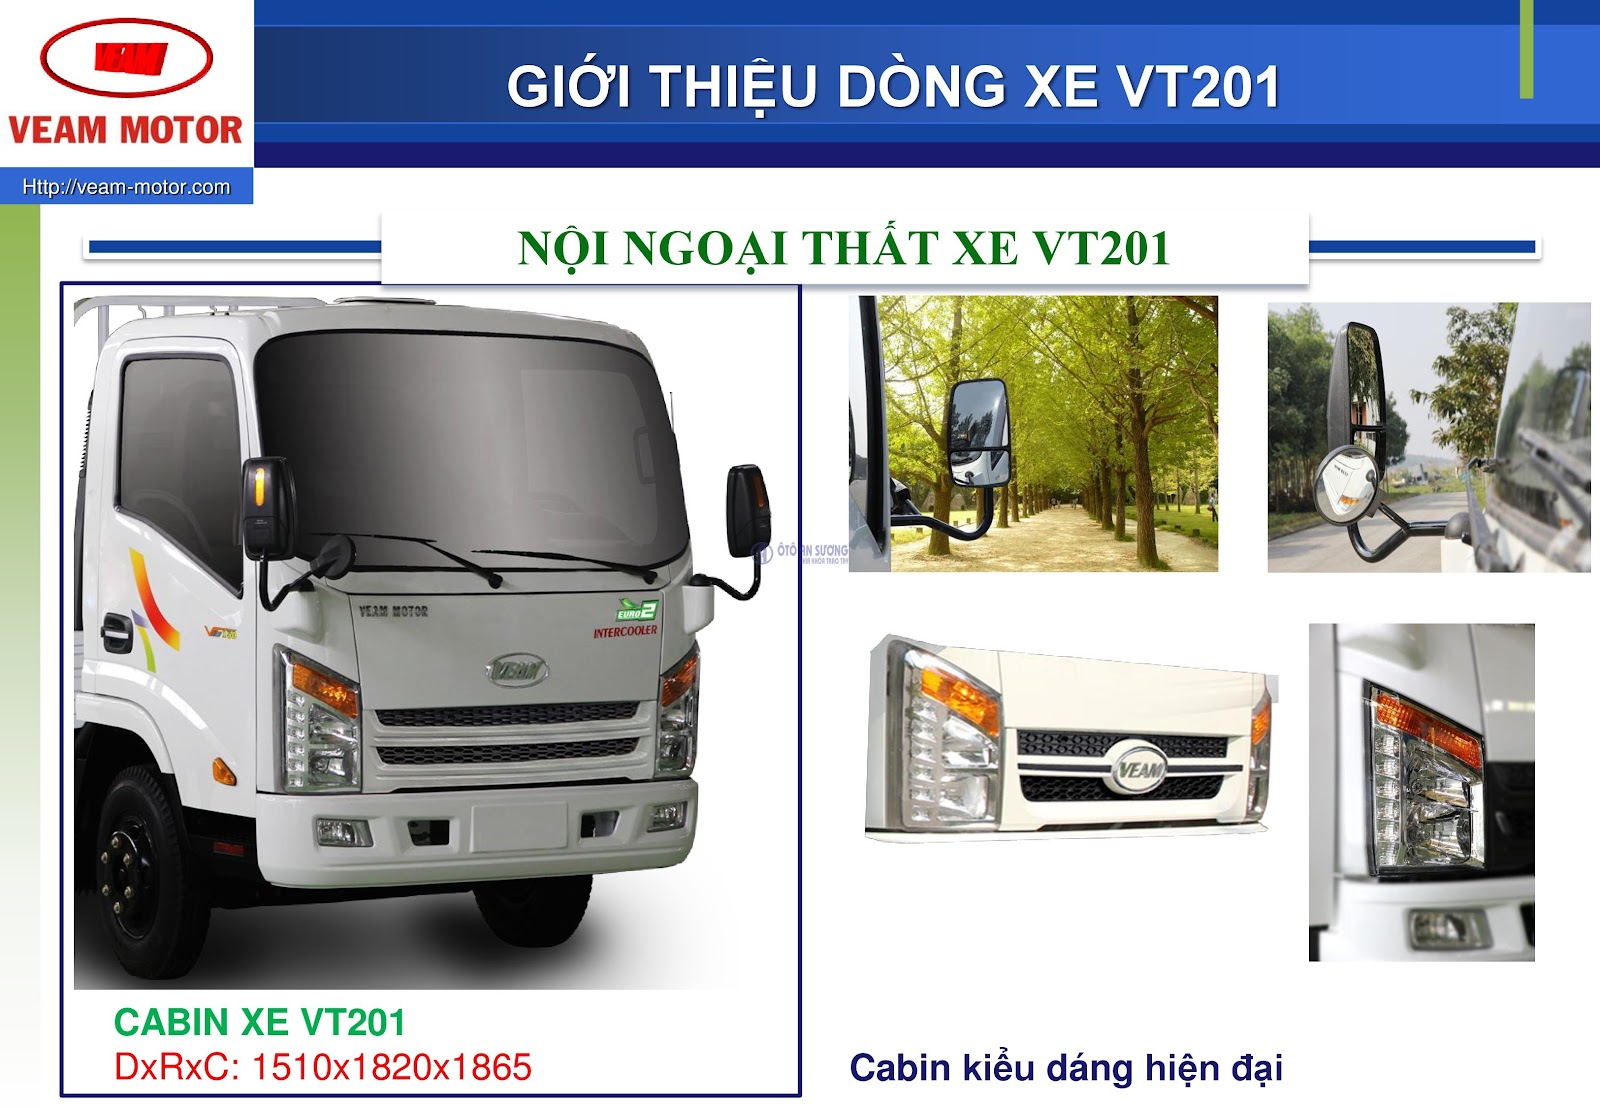 Bán trả góp lãi suất thấp Xe tải Veam VT201 - Đại lý chính thức xe tải Veam VT201 tại TPHCM! - 1